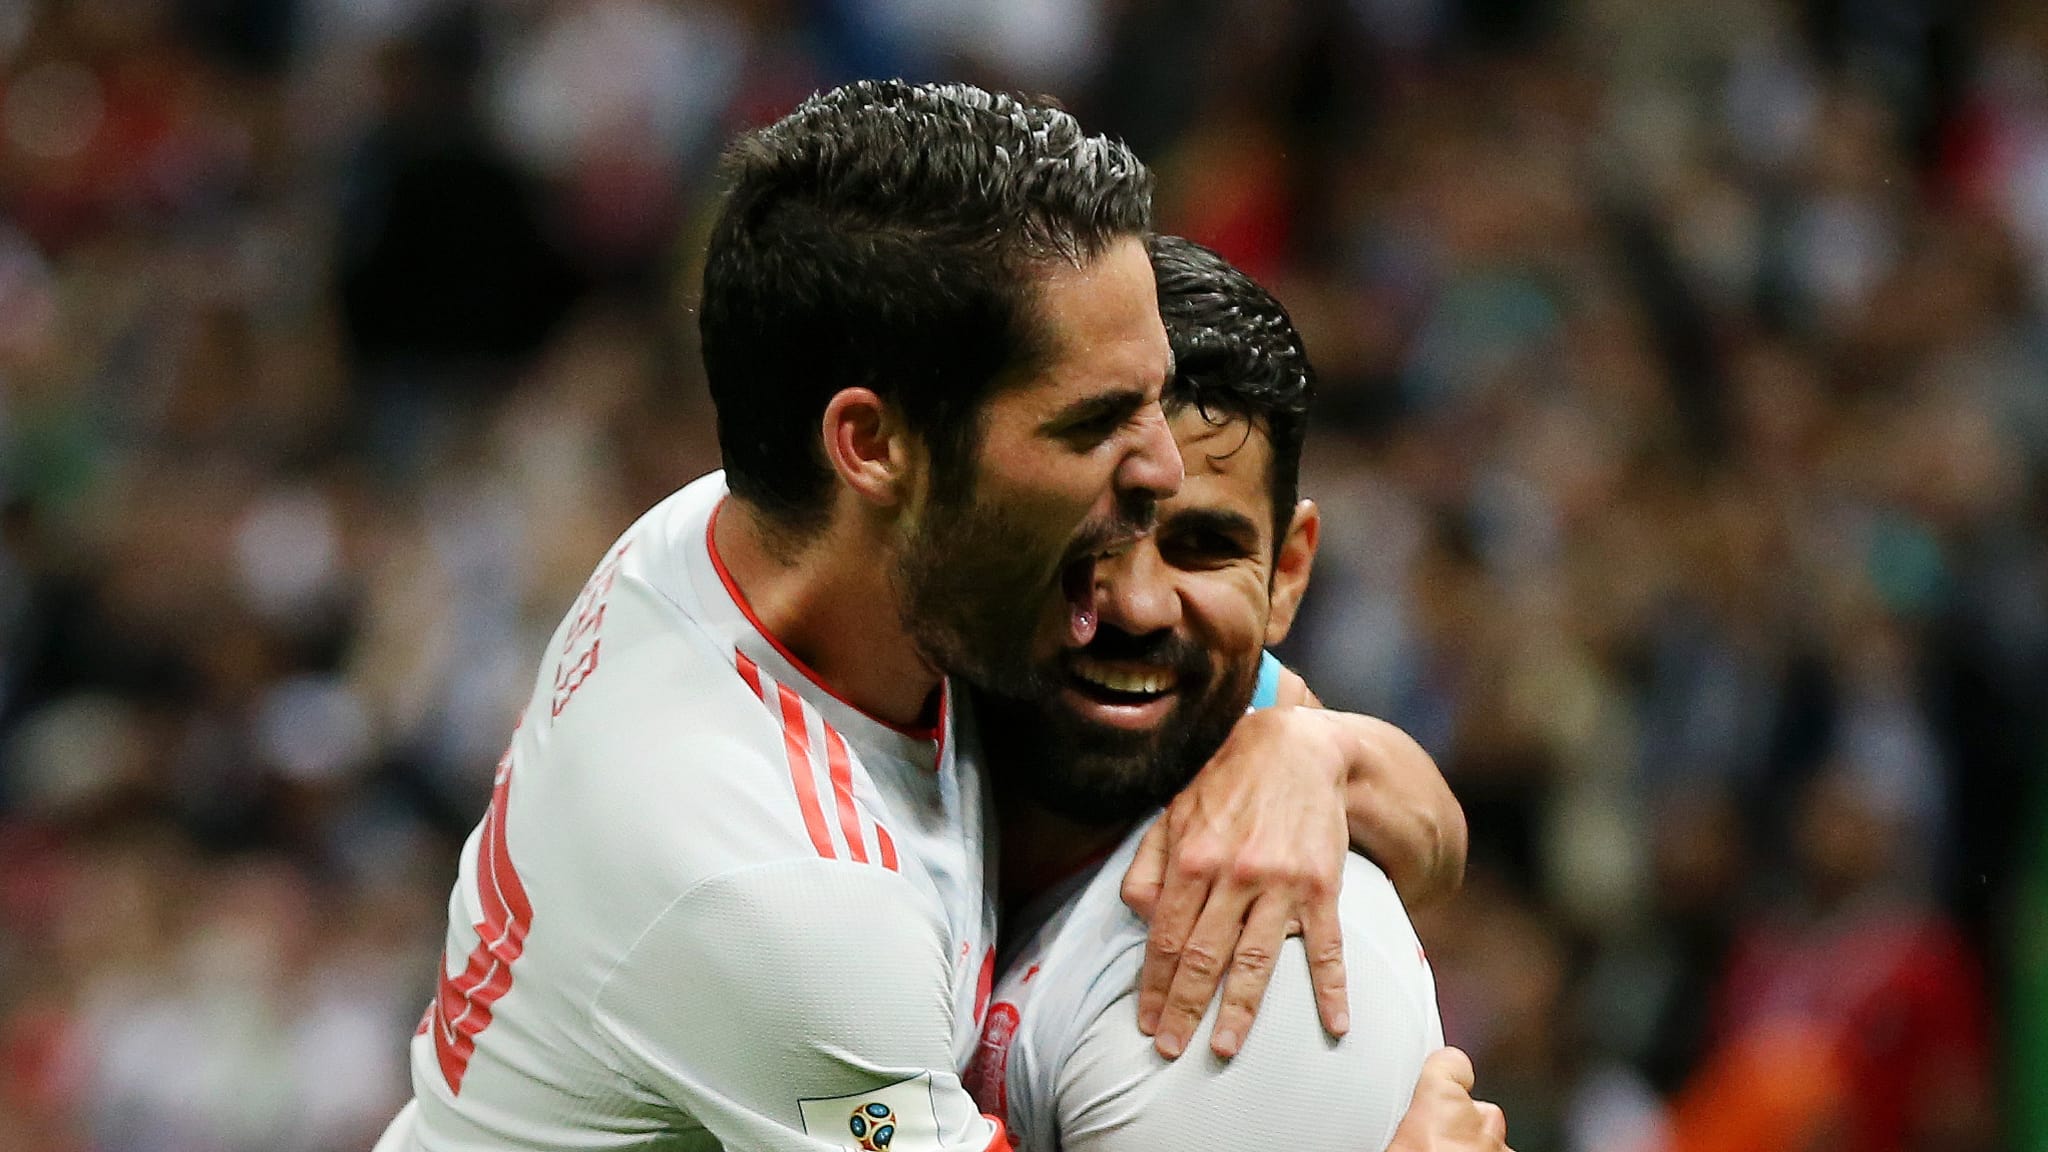 MENANG. Diego Costa merayakan gol kemenangannya bersama rekannya Isco saat Spanyol mengalahkan Iran. Foto dari FIFA.com 